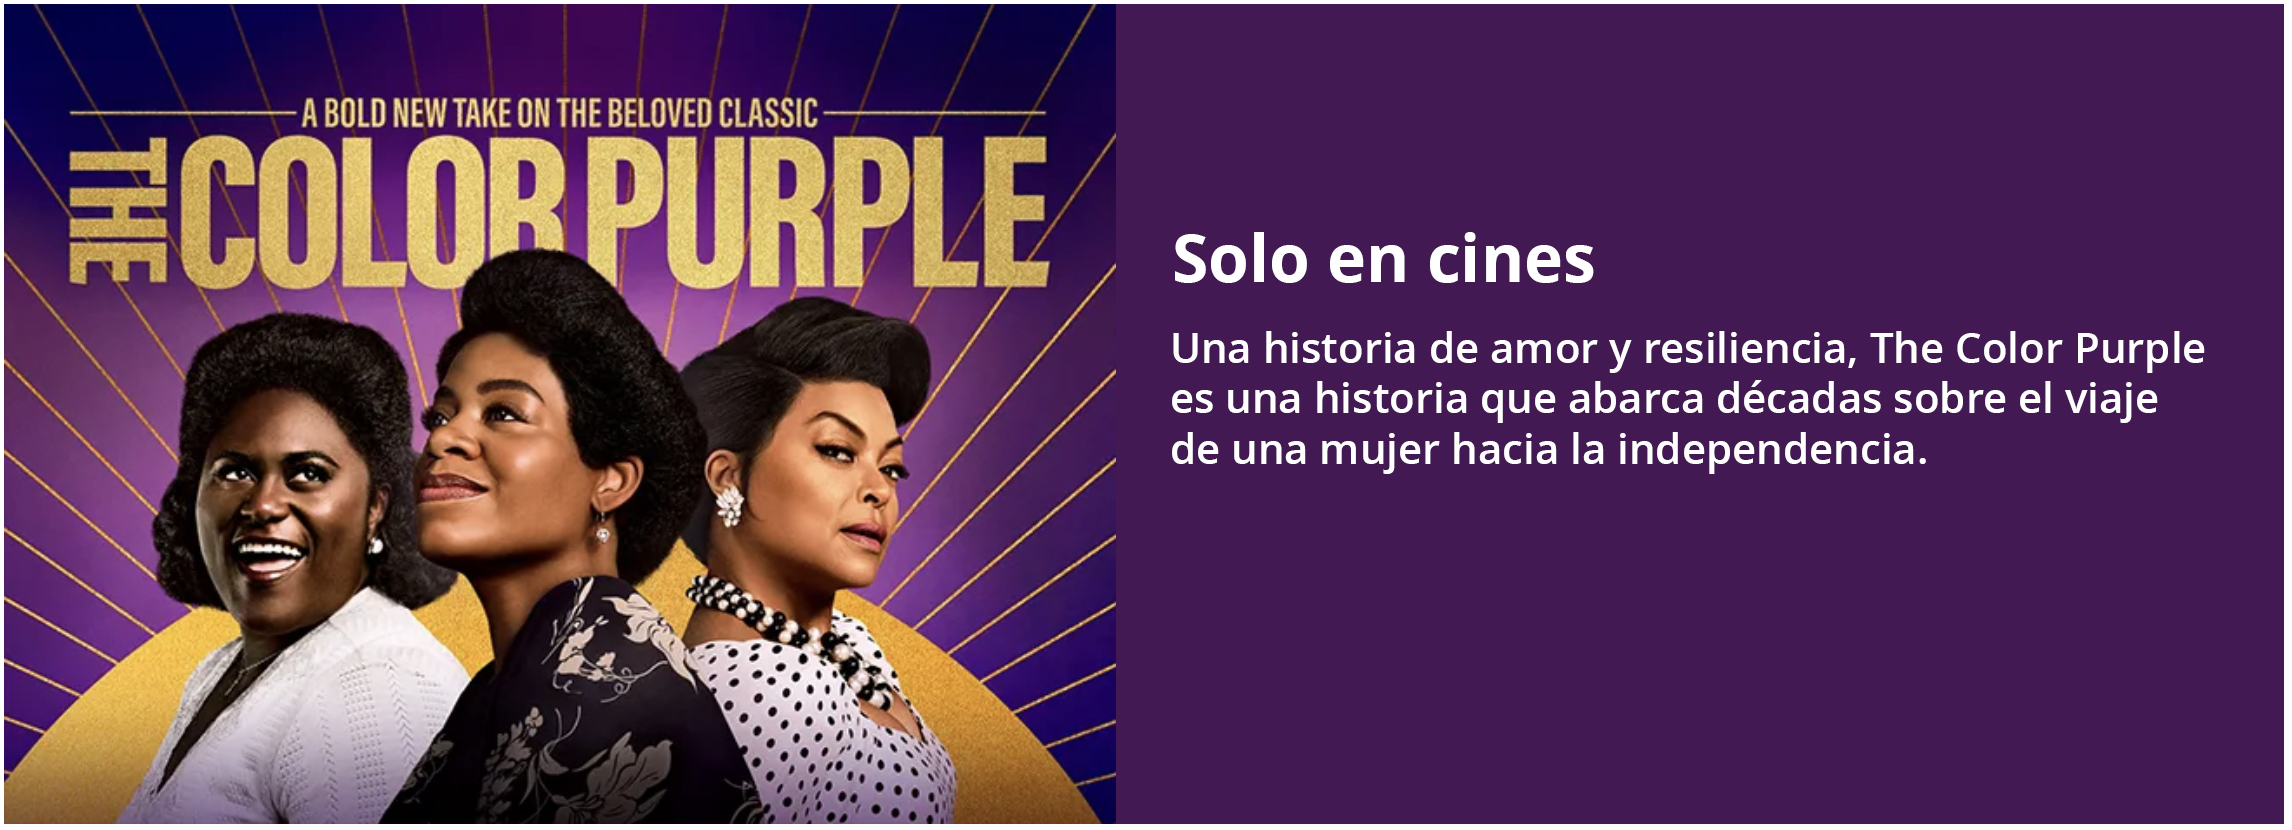 Solo en cines the purple color 